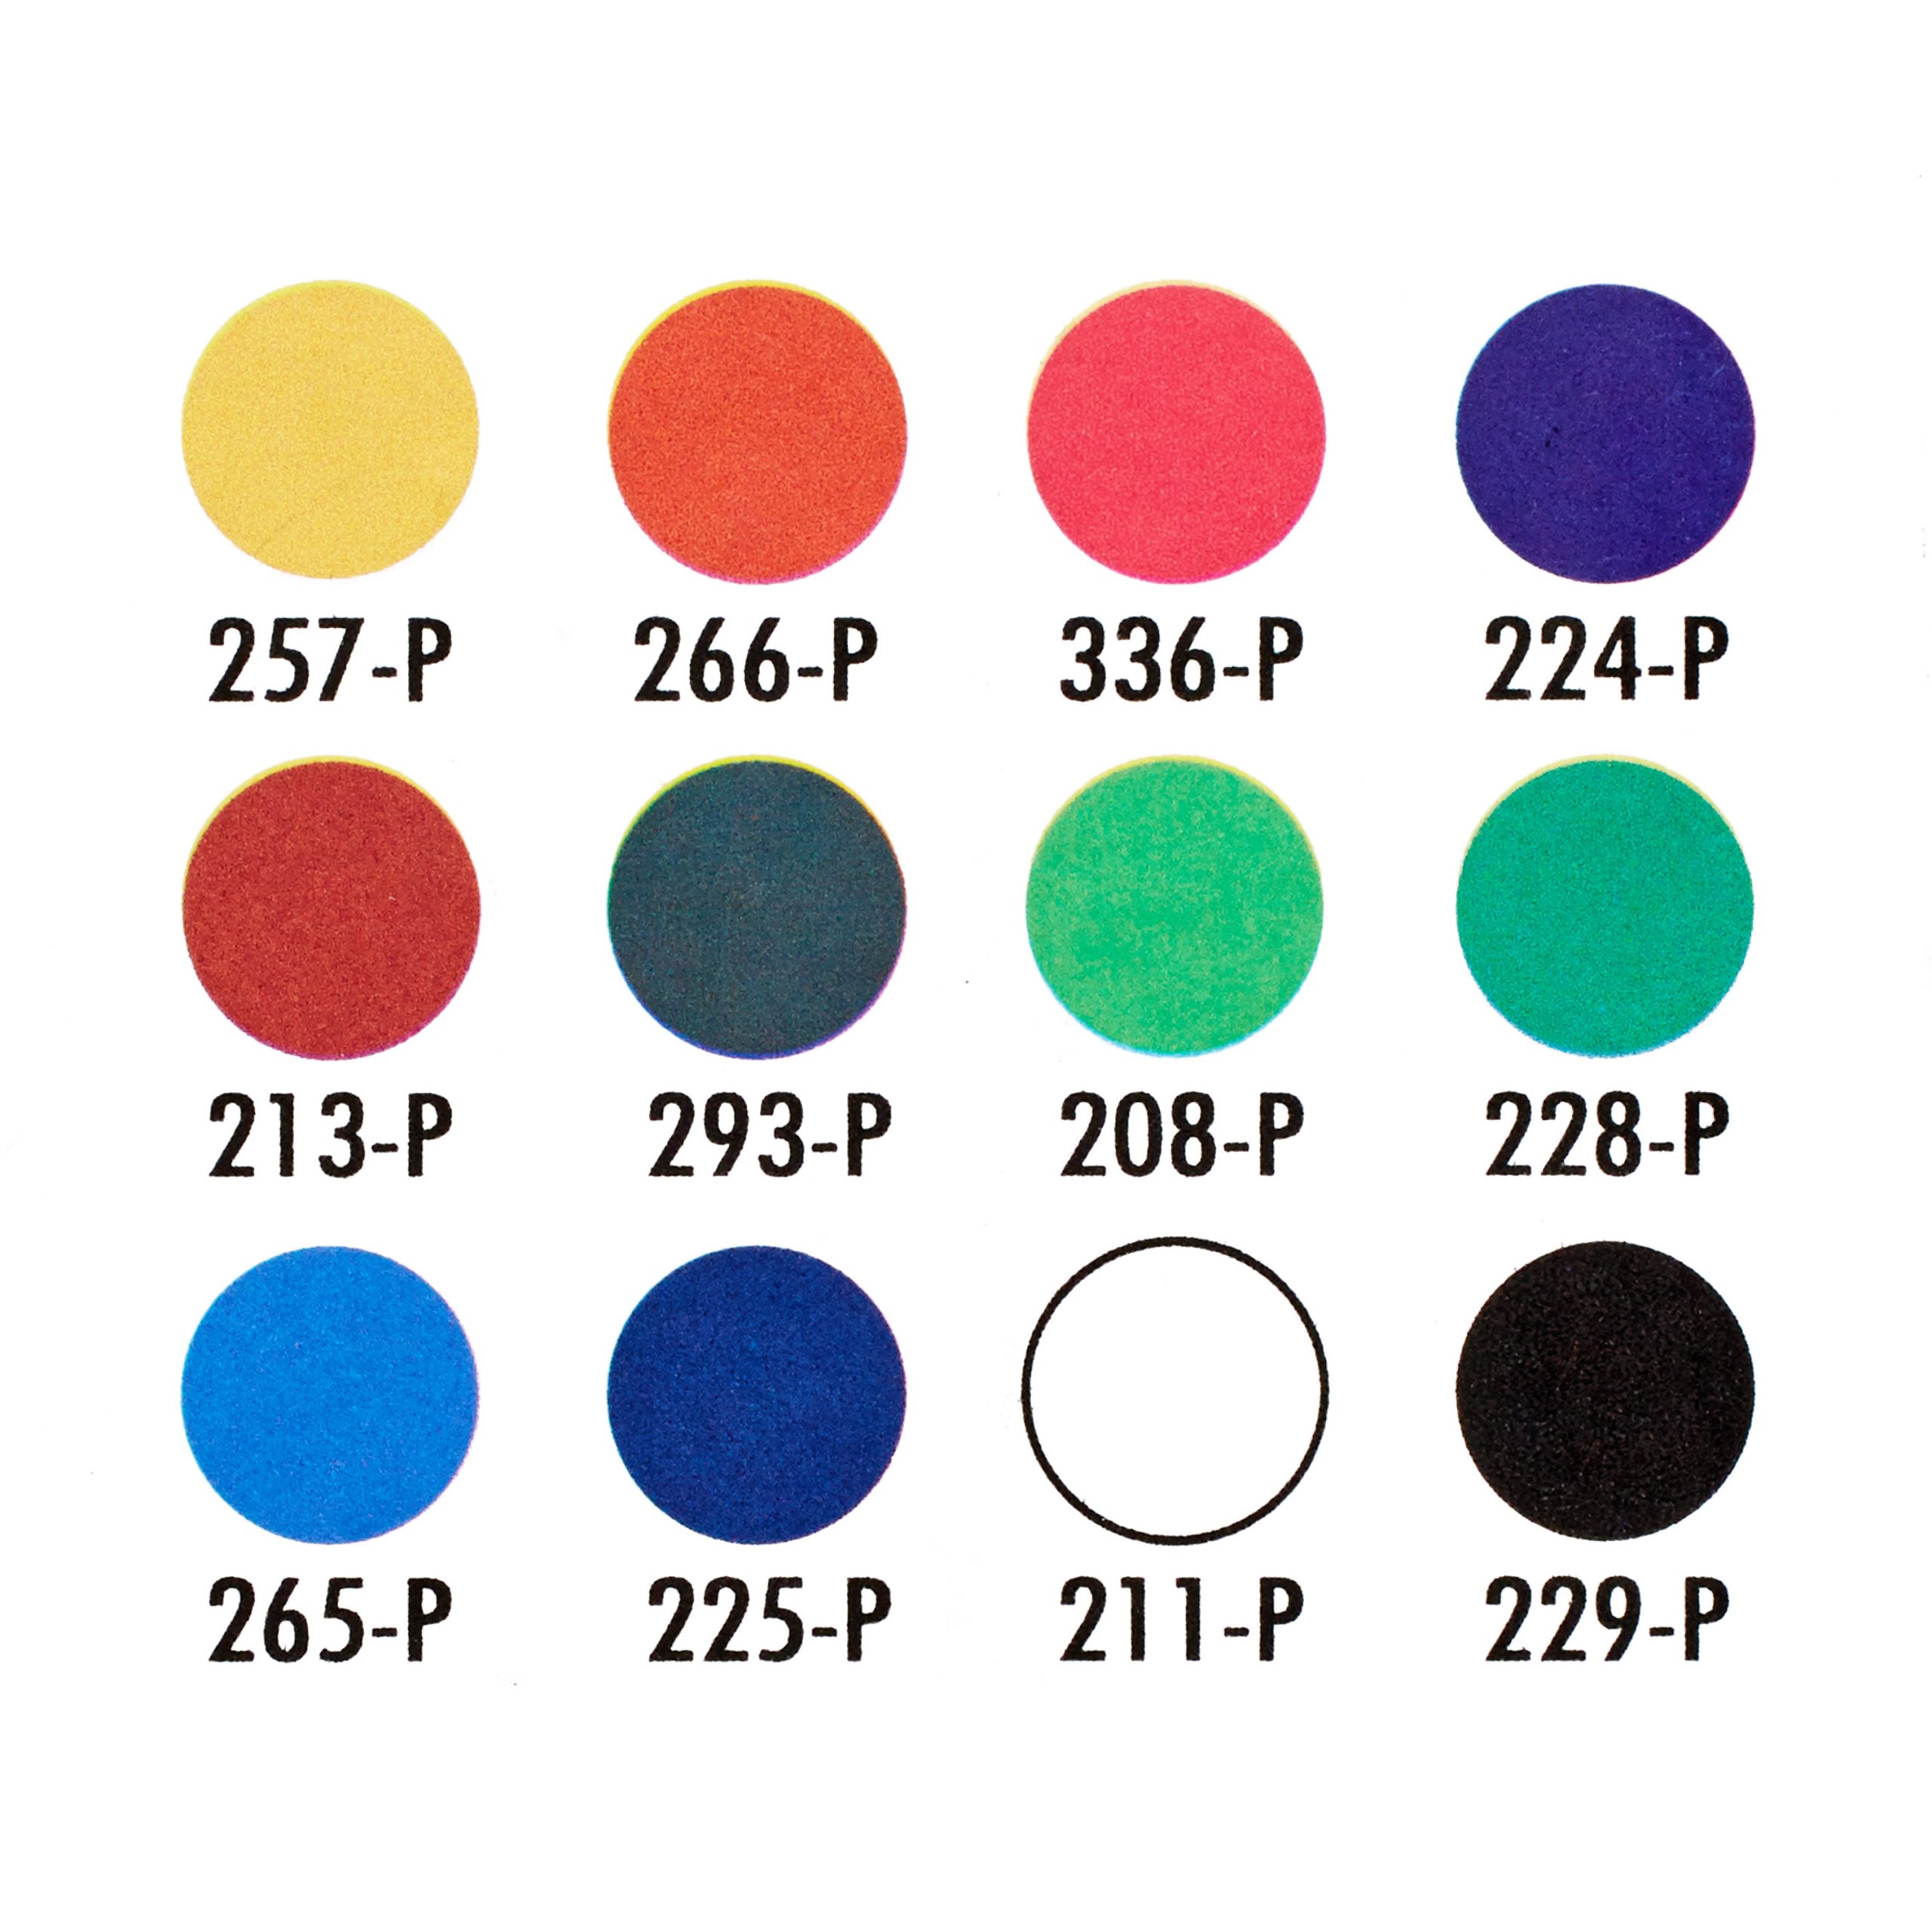 27048-prismacolor-pastels-premiernupastels-package-colorkey